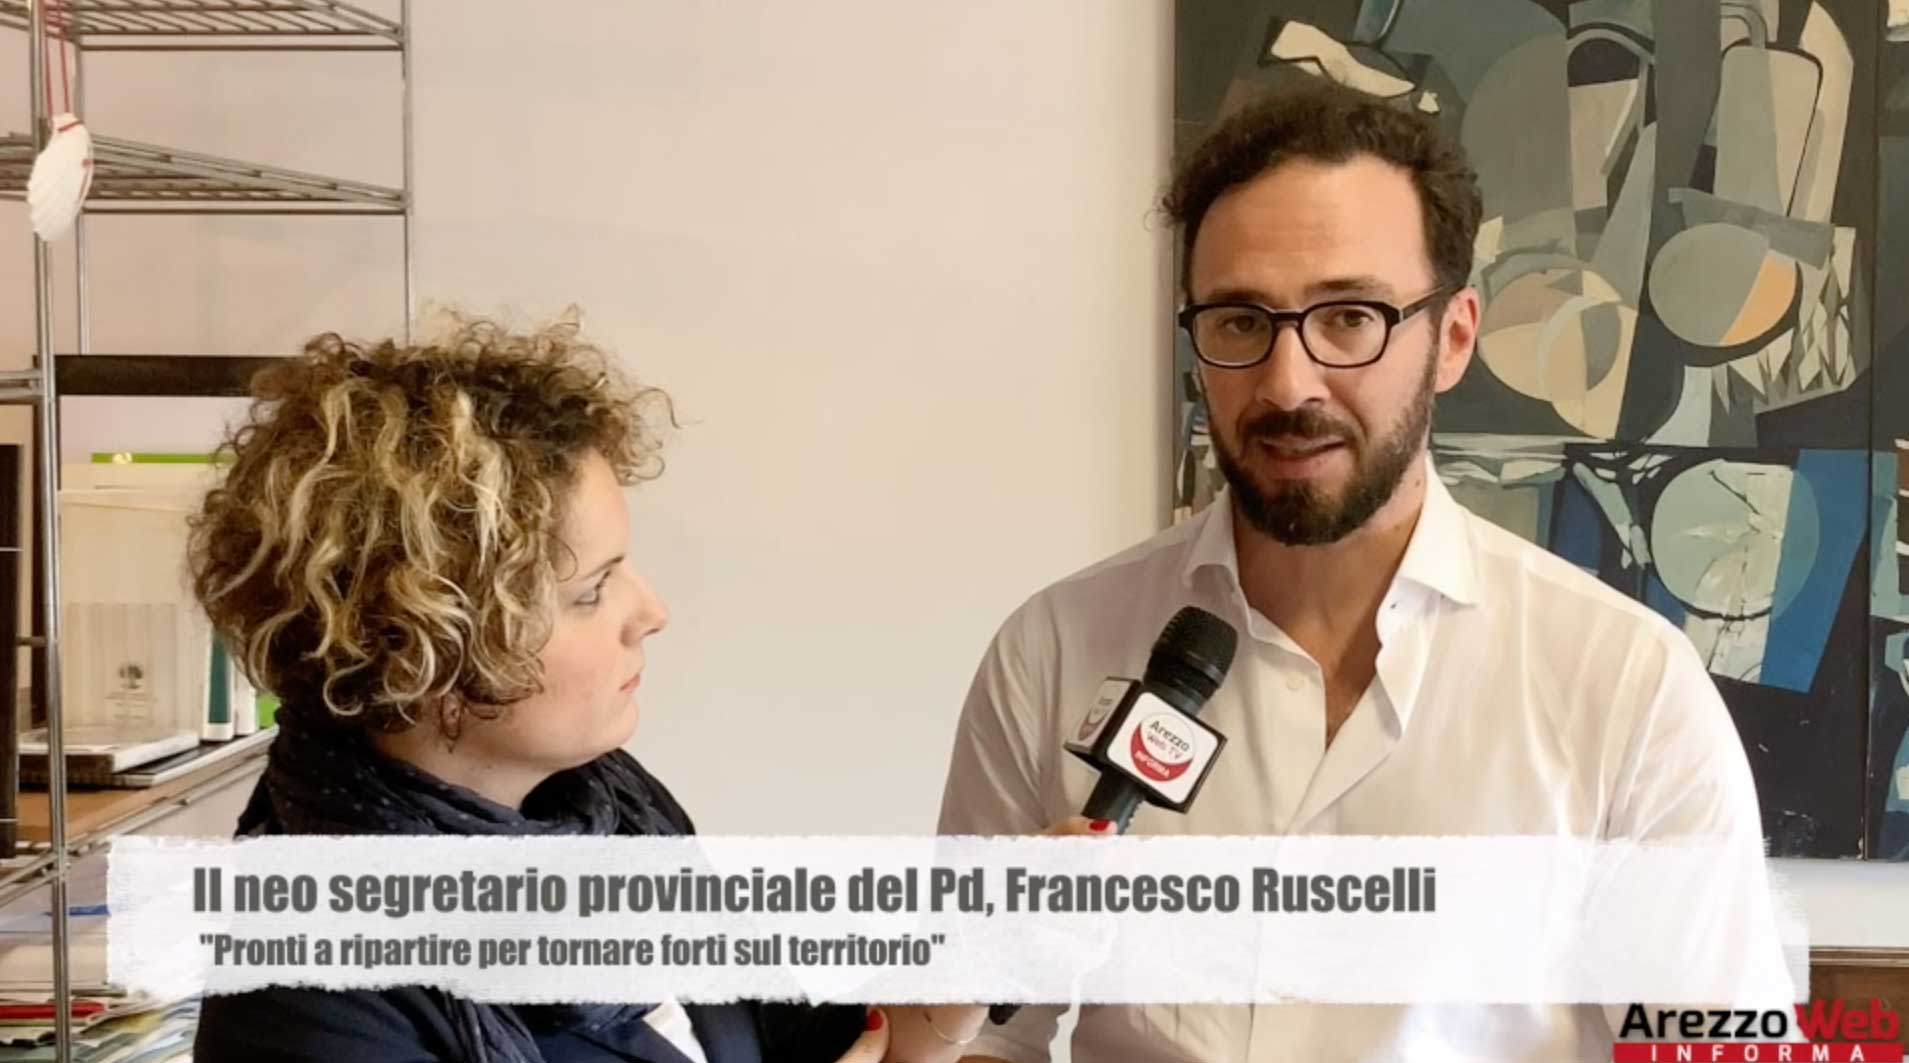 Il neo segretario provinciale del Pd, Francesco Ruscelli: “pronti a ripartire per tornare forti sul territorio. Il candidato sindaco per Arezzo? Prematuro fare qualsiasi nome”